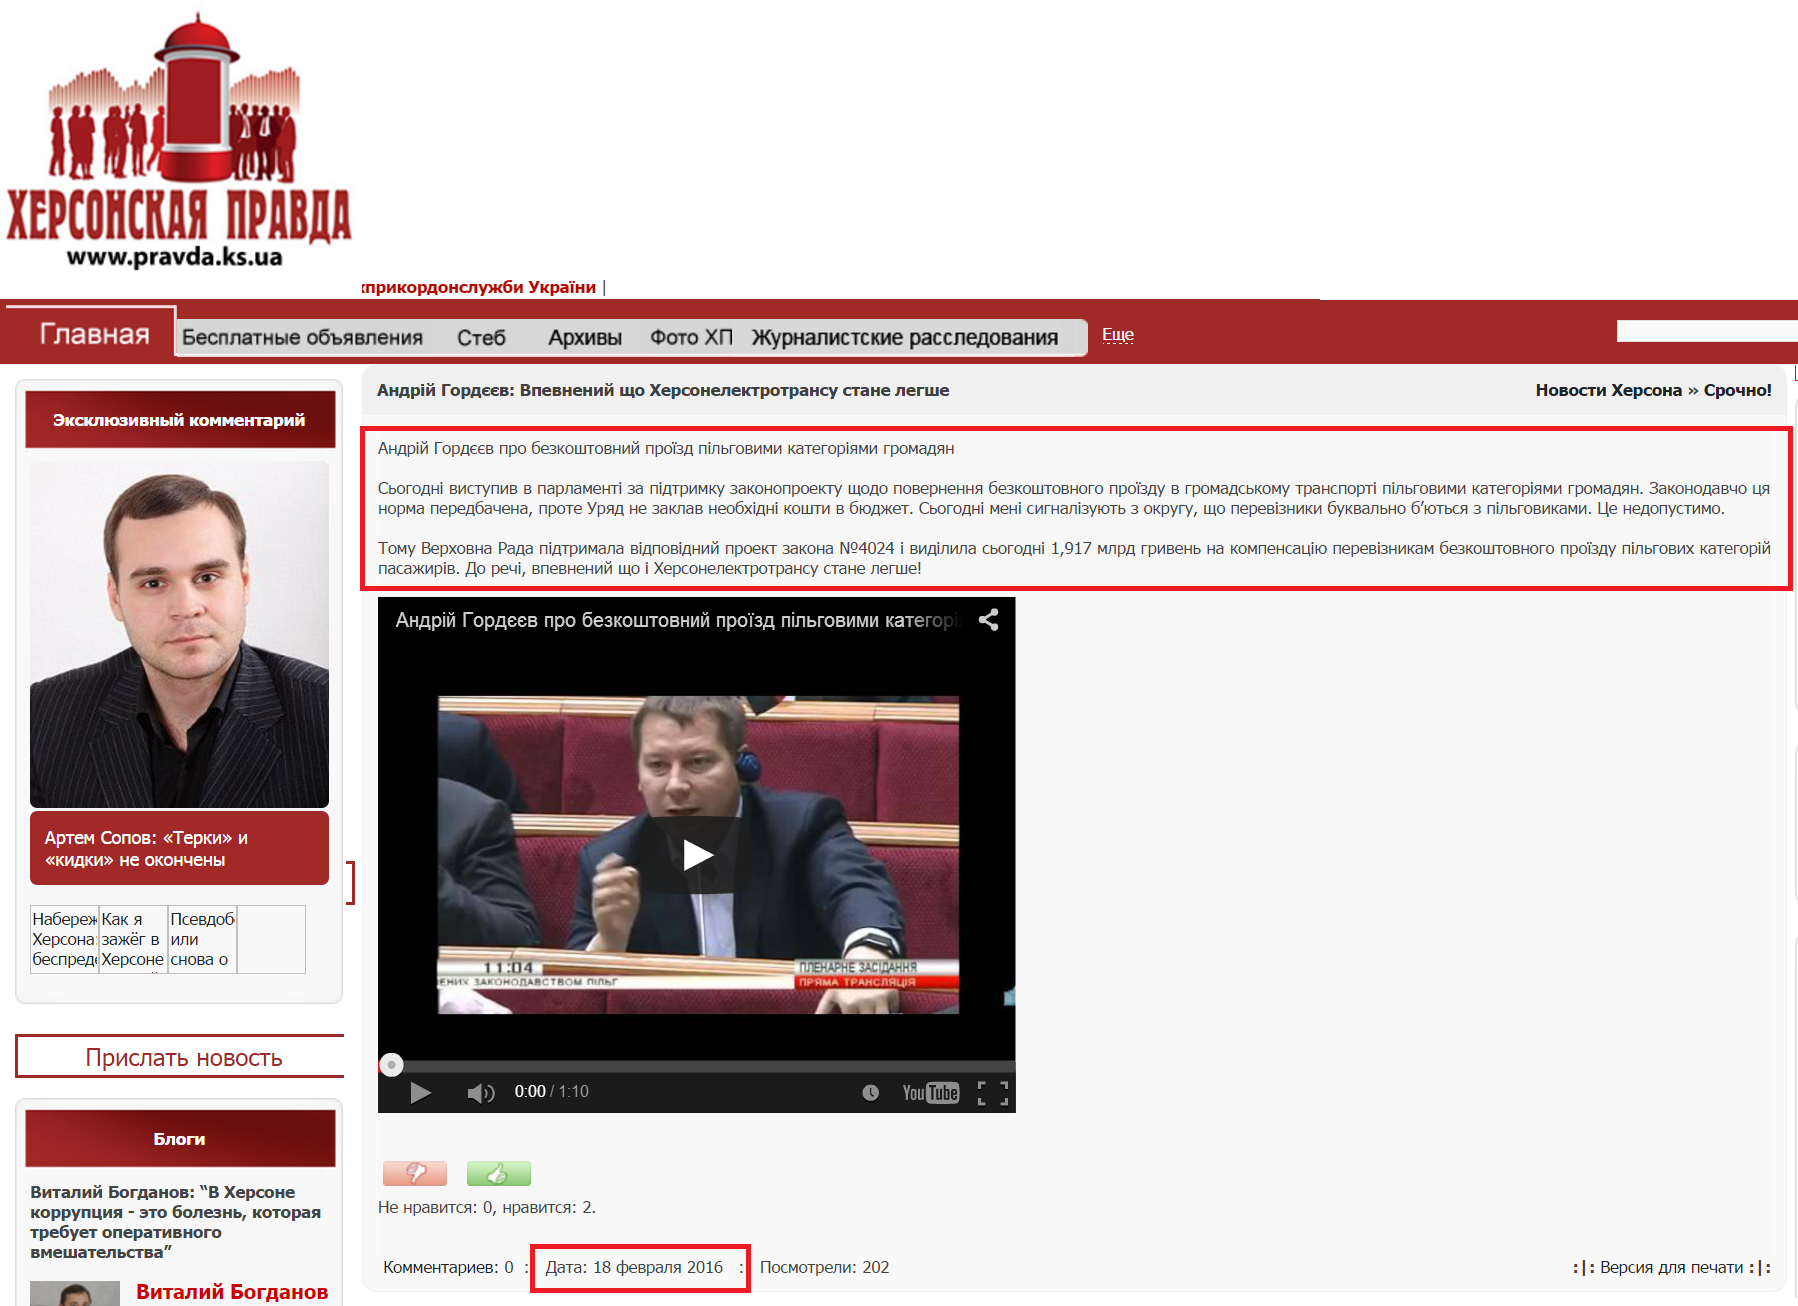 http://pravda.ks.ua/kherson_ks/important/29037-andrij-gordyeyev-vpevnenij-shho.html